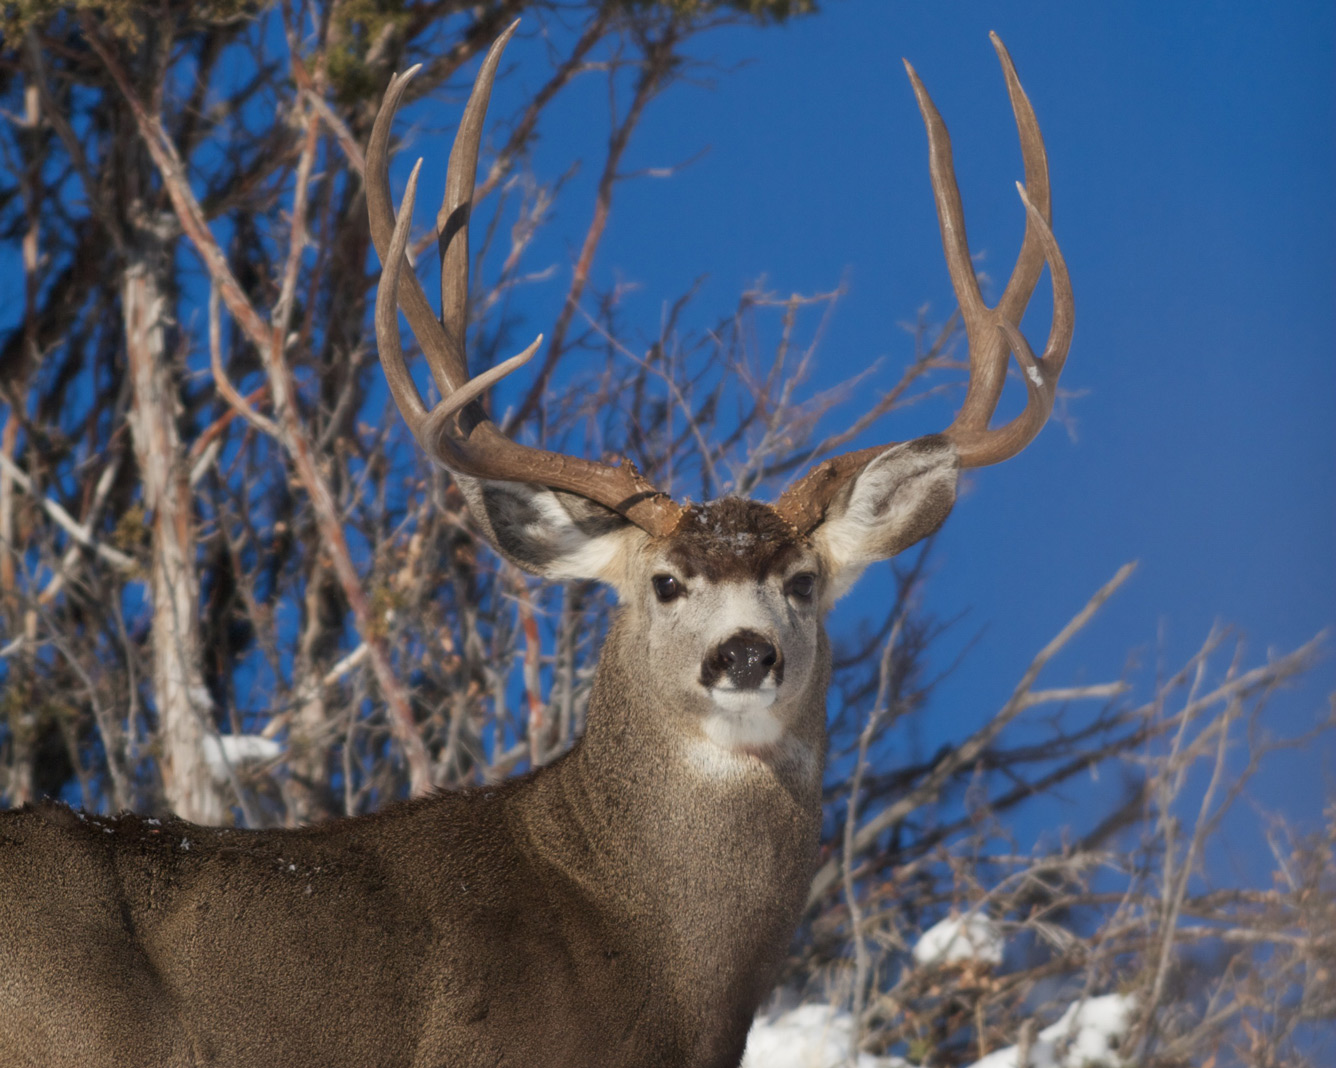 Deer & Deer Hunting, Deer & Deer Hunting Magazine